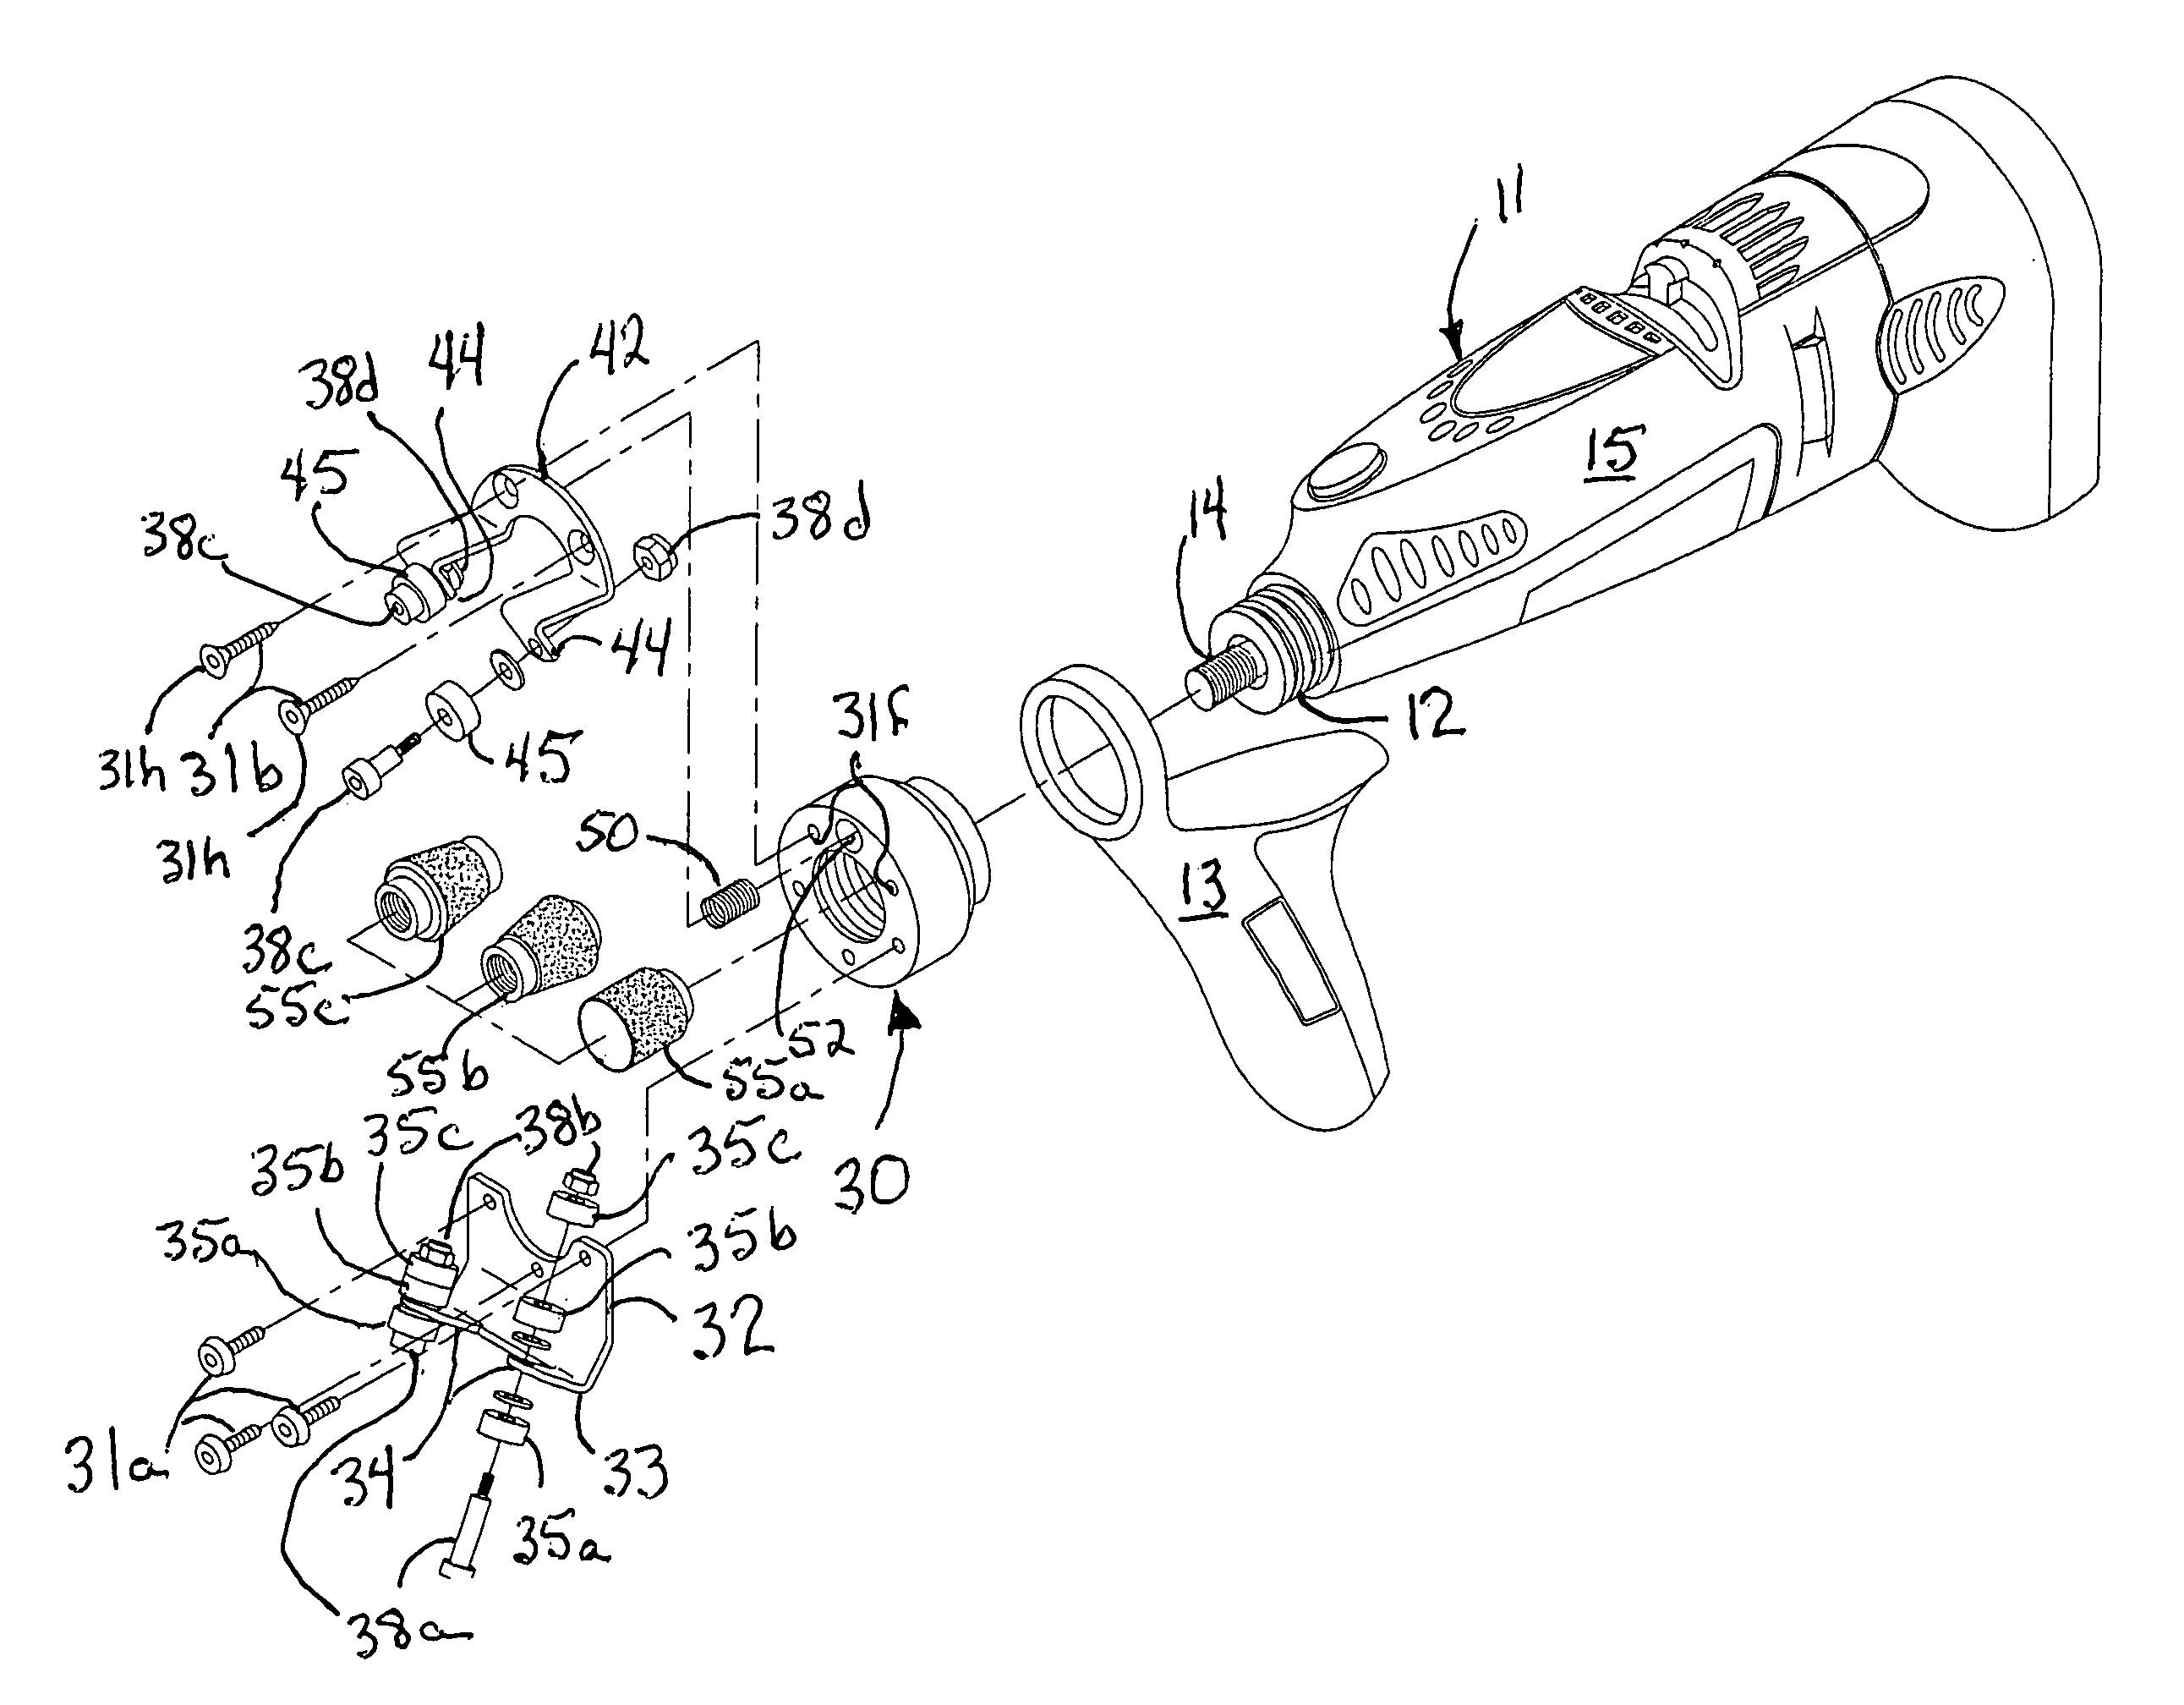 Hand-held blade sharpener